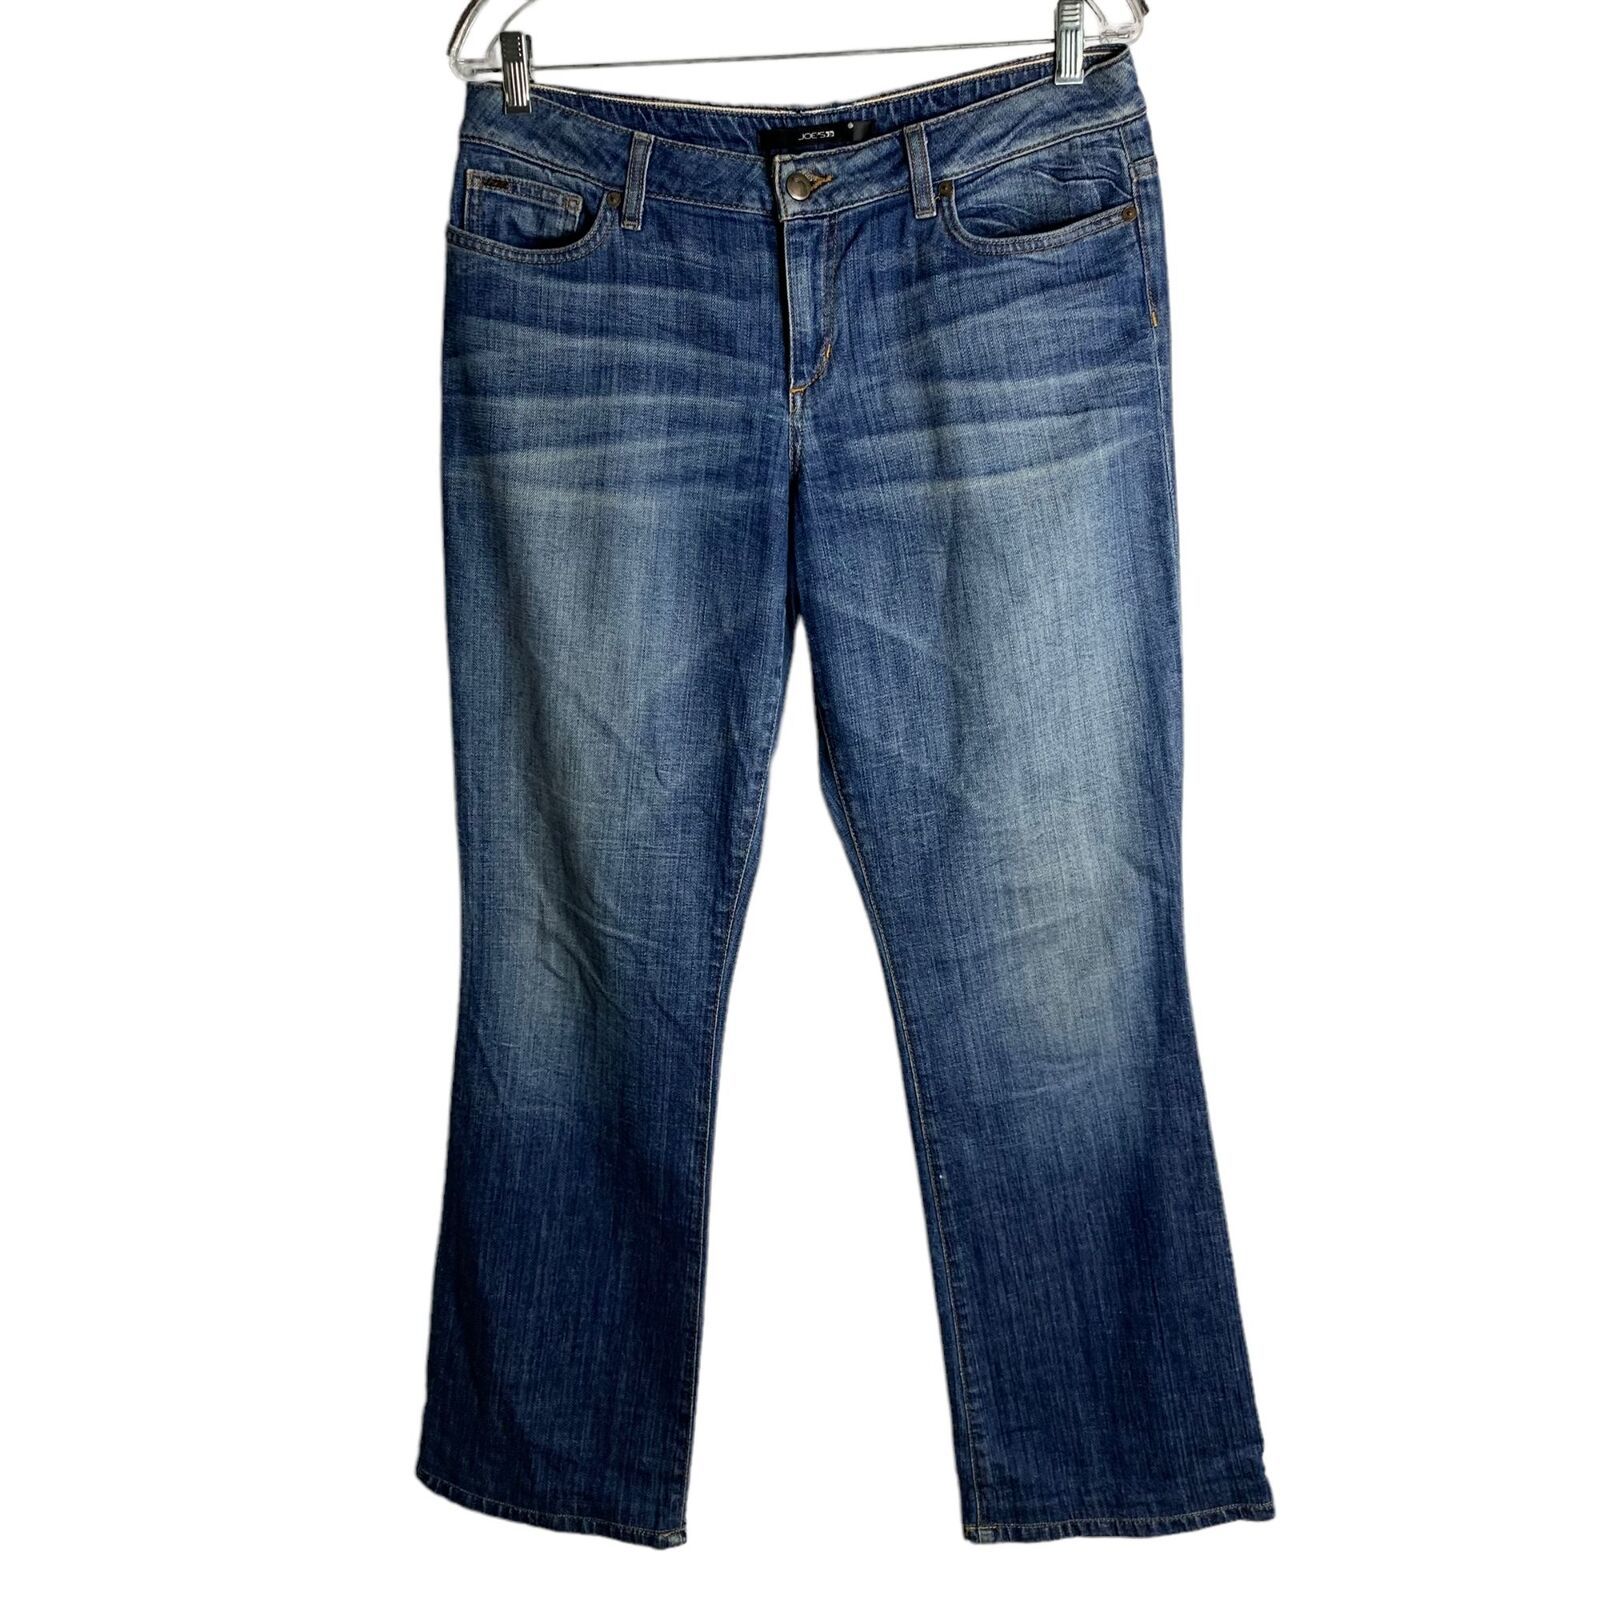 Joes Straight Leg Denim Jeans 32 Med Wash Honey Whiskered 5 Pocket Button Zip - $37.13